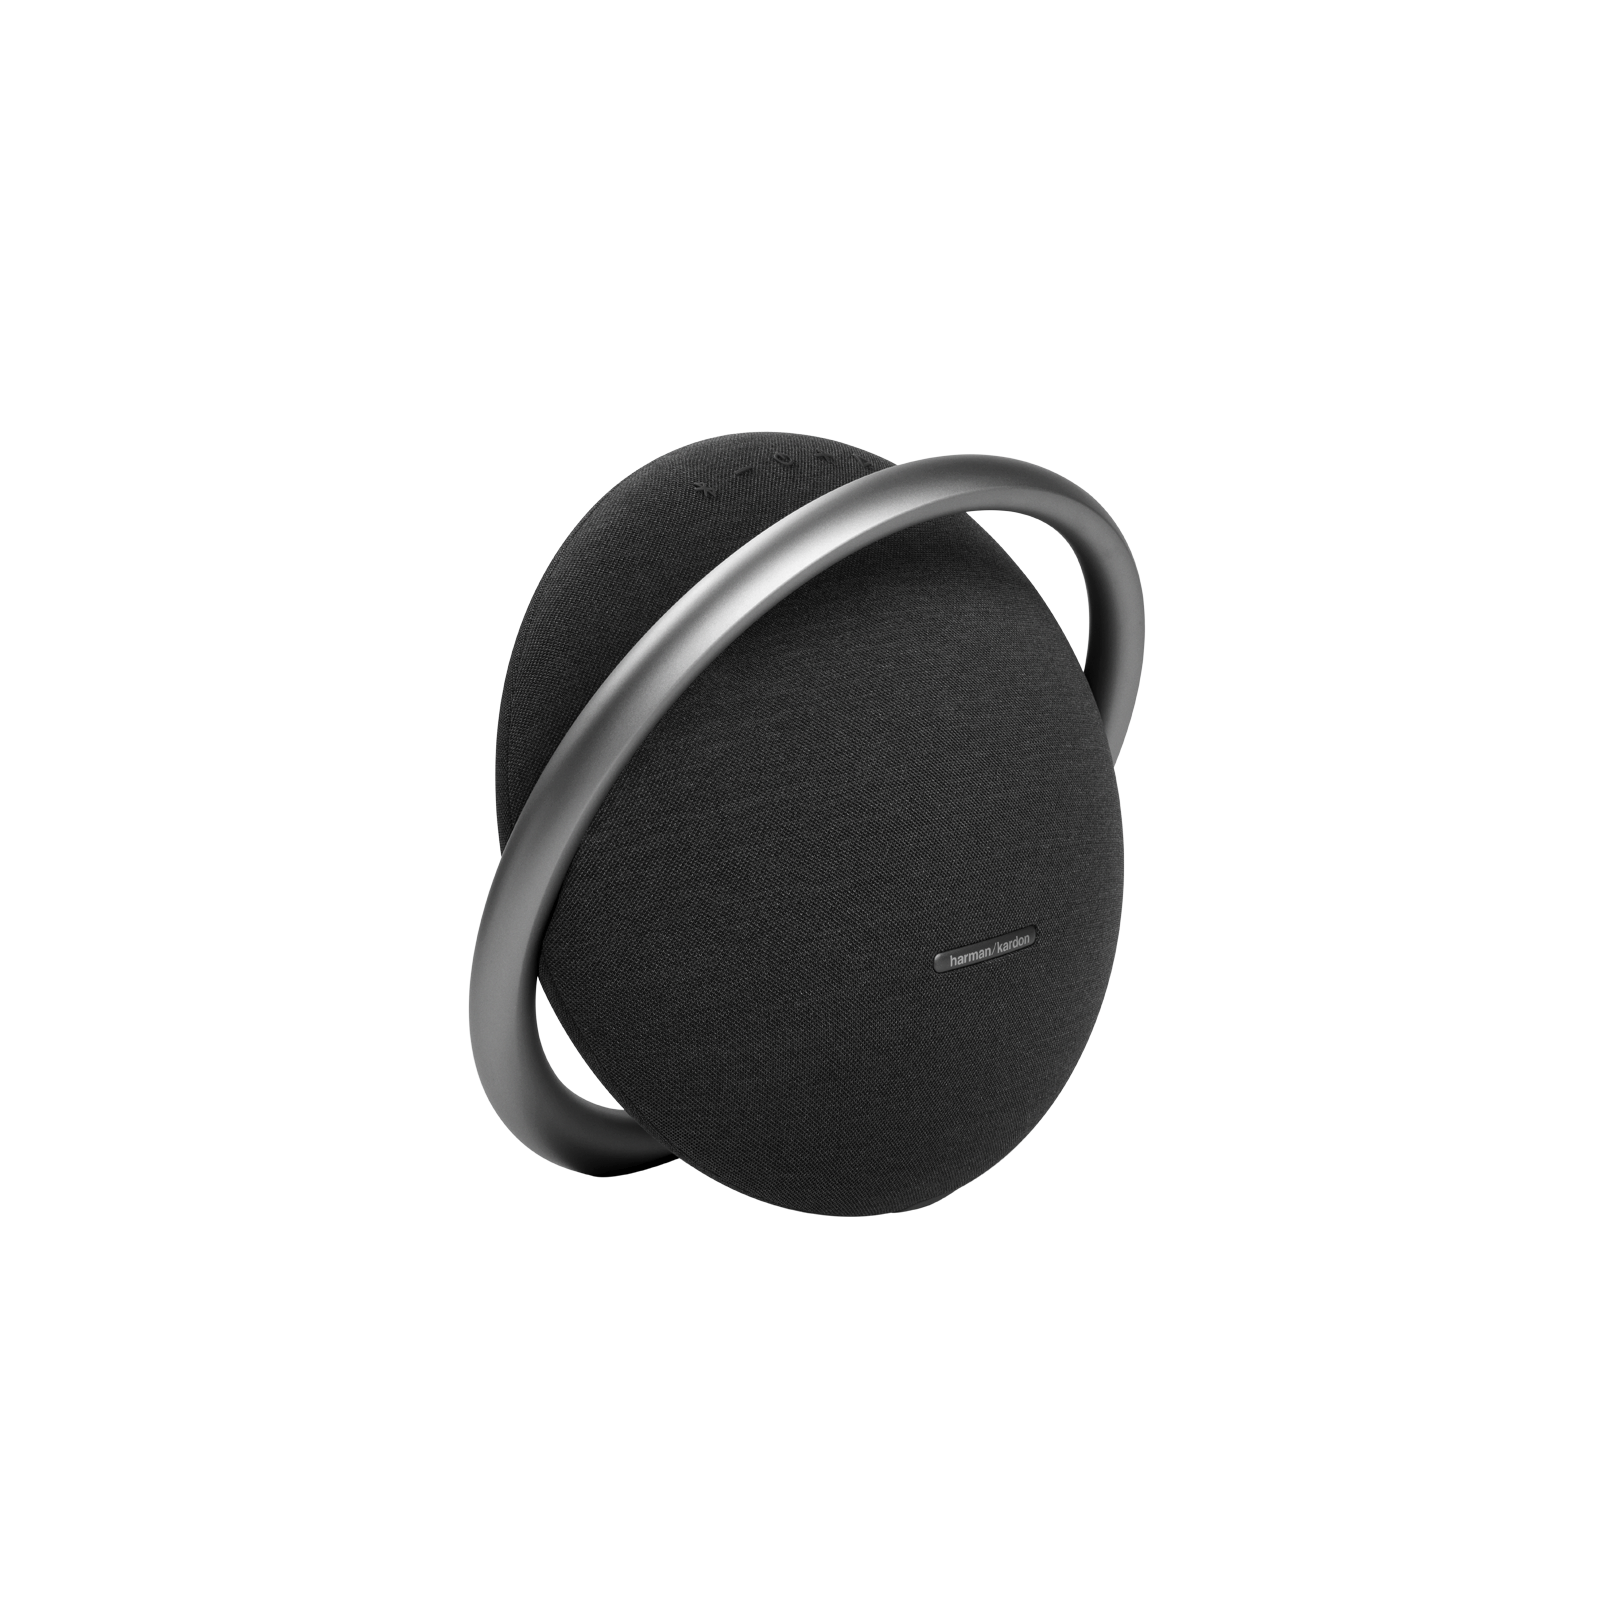 Onyx Studio 7 - Black - Portable Stereo Bluetooth Speaker - Detailshot 1